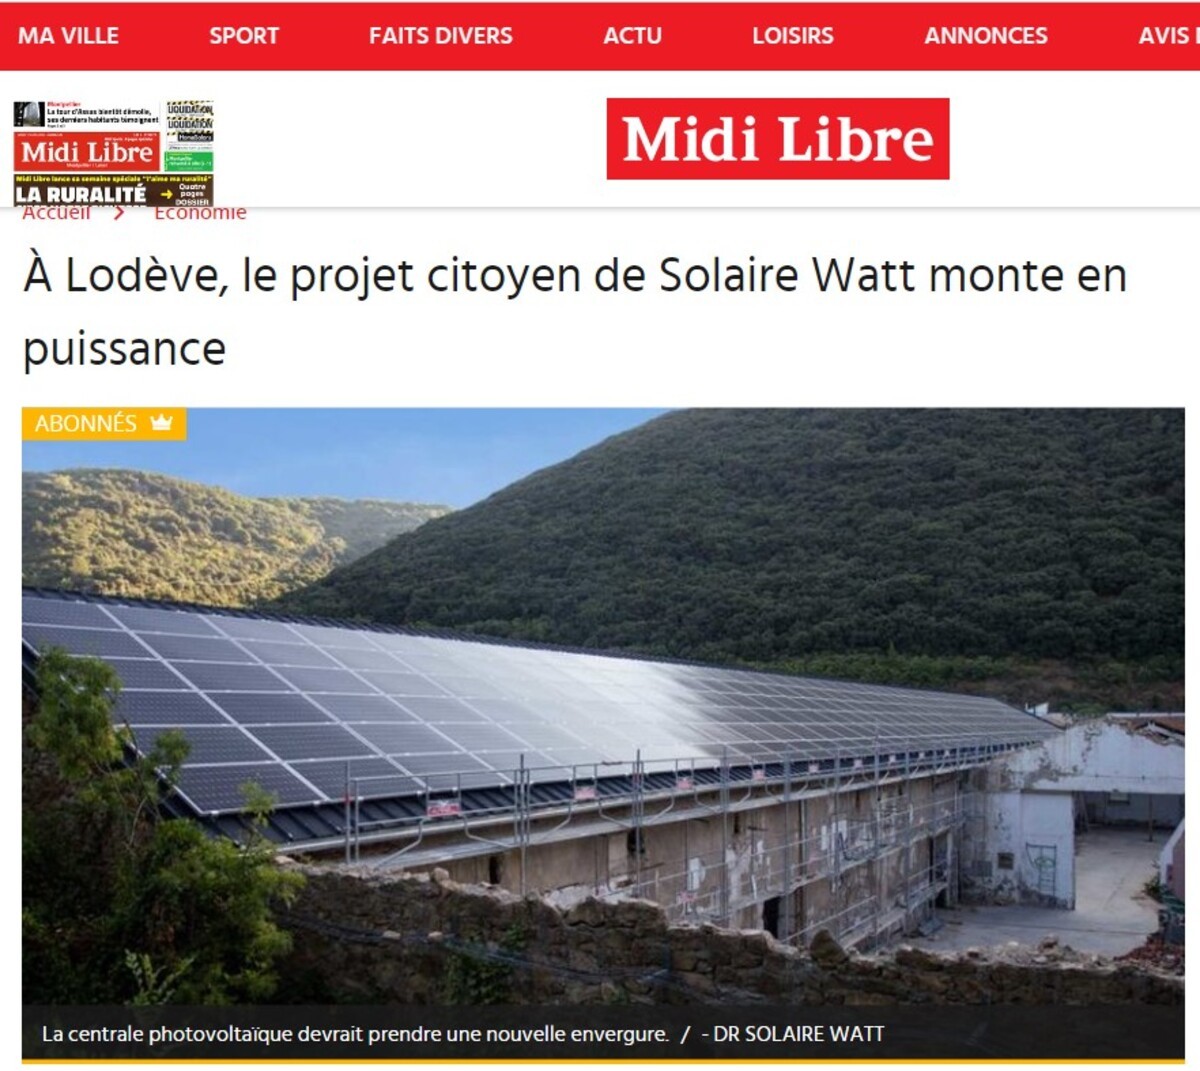 Le Midi Libre met à l'honneur le projet citoyen de Solaire Watt